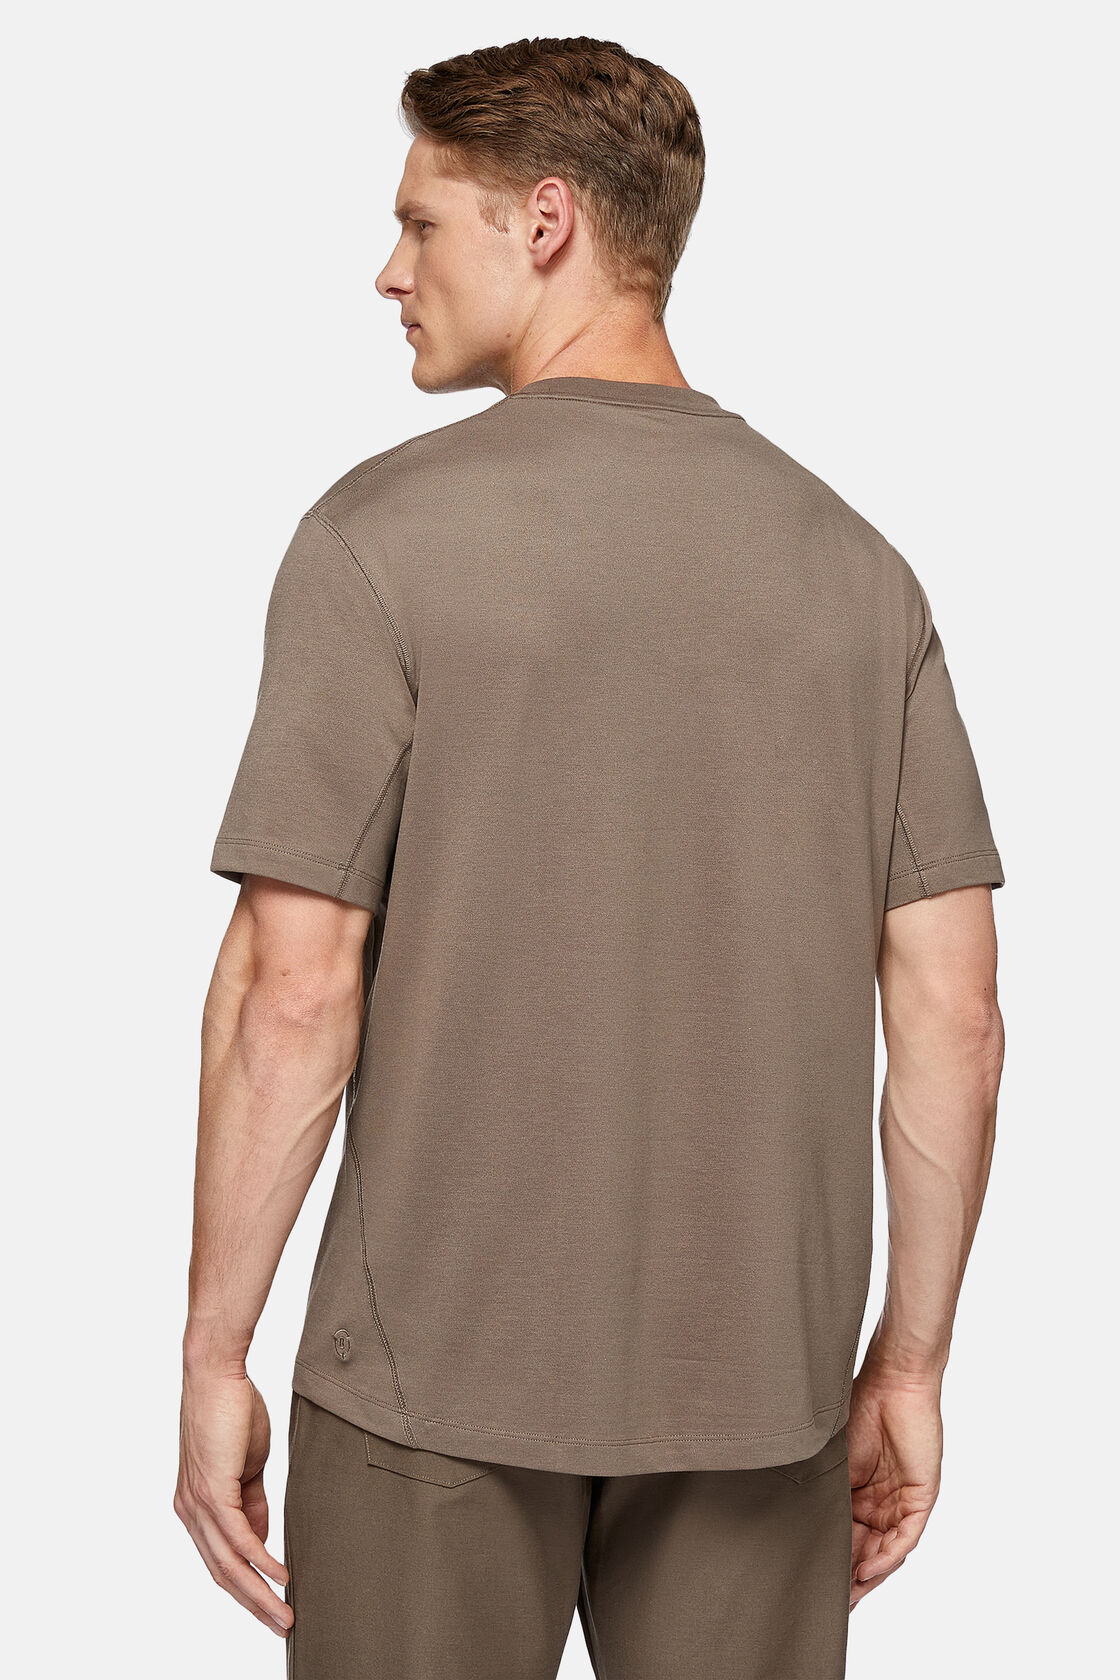 Πικέ μπλουζάκι πόλο υψηλών επιδόσεων, Brown, hi-res